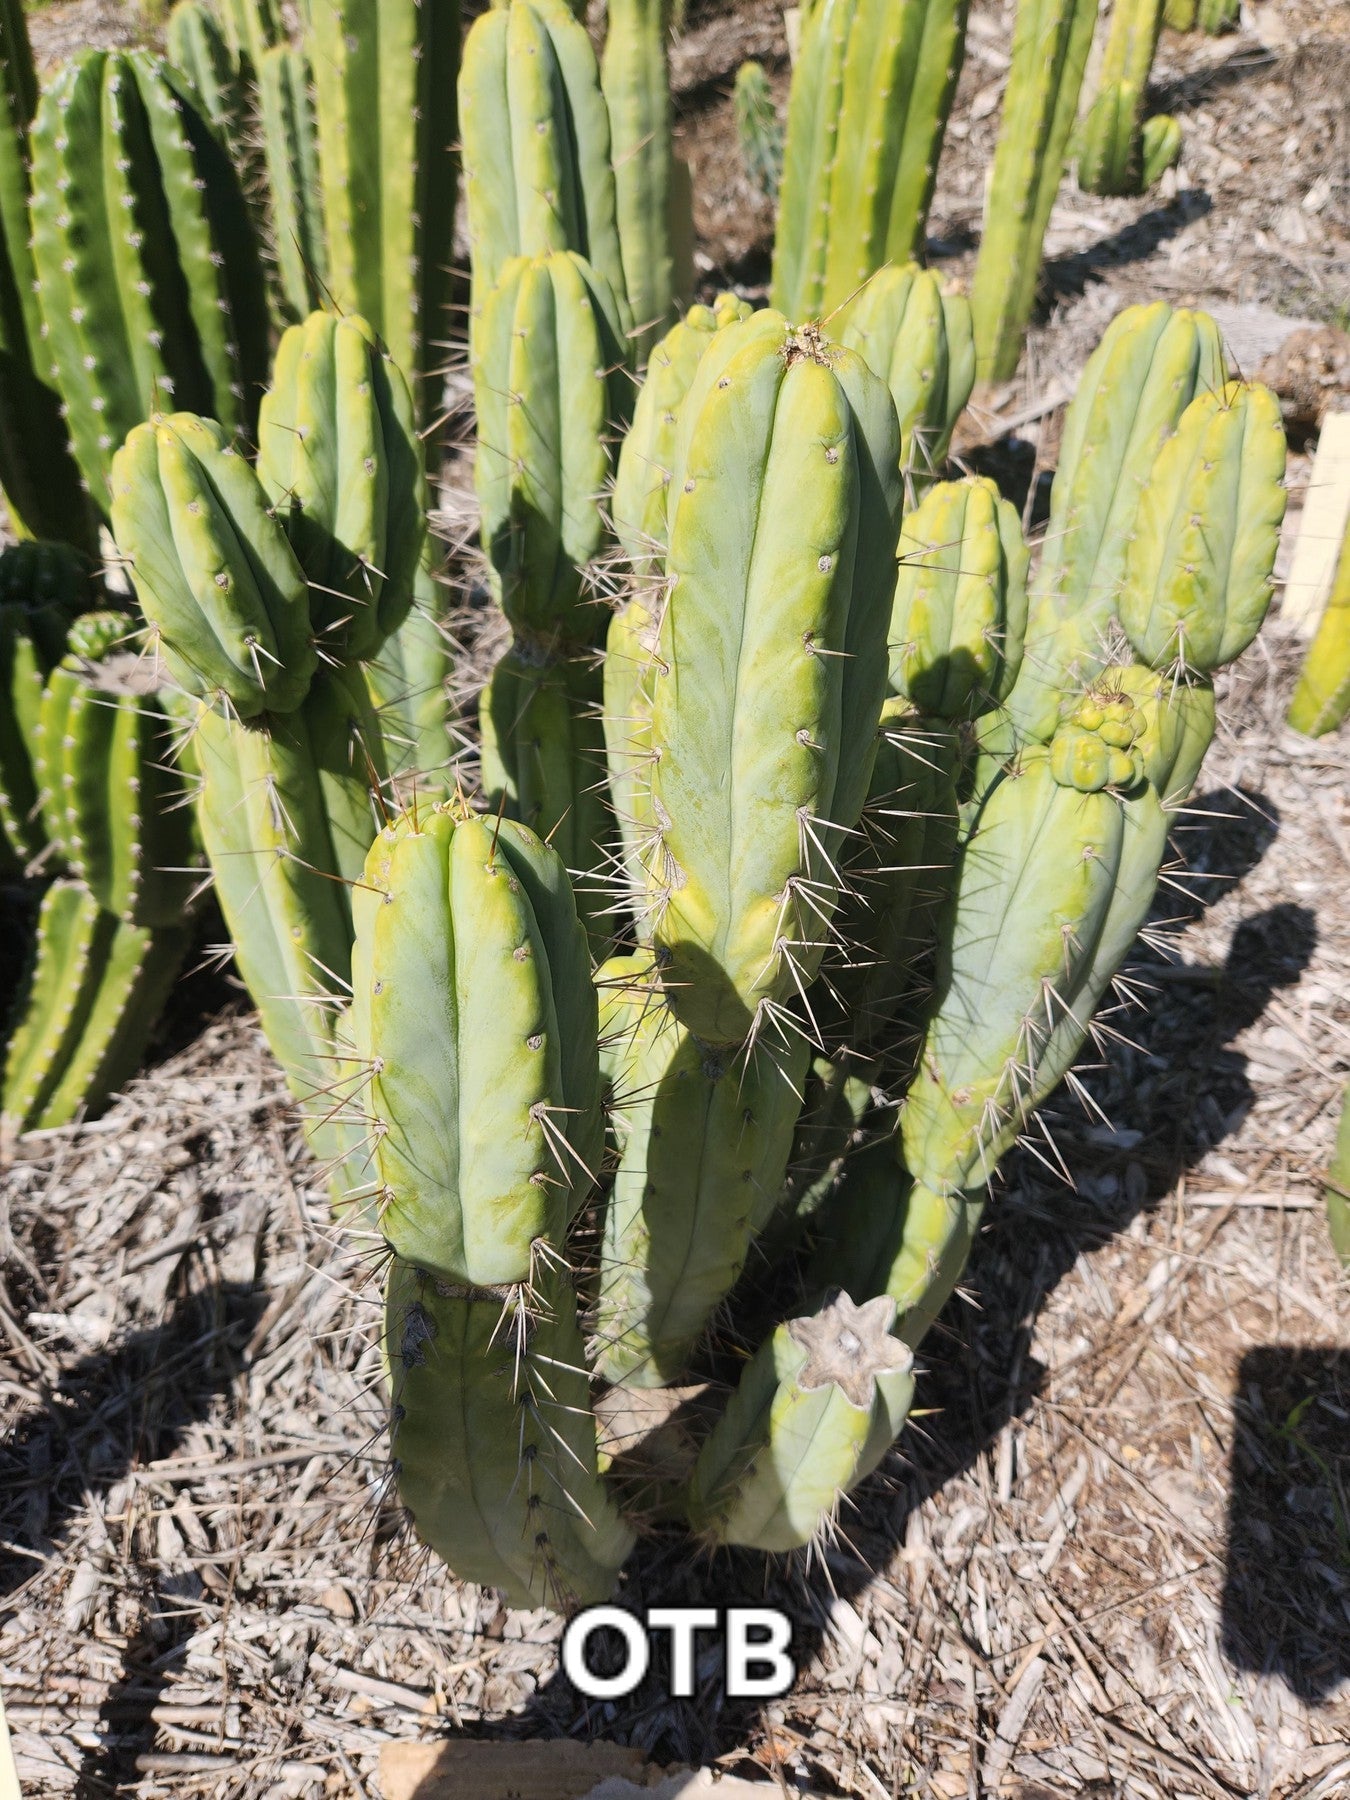 #EC28 EXACT Trichocereus OTB "Old Town Bridgesii" Cactus cutting 5-6"-Cactus - Large - Exact-The Succulent Source